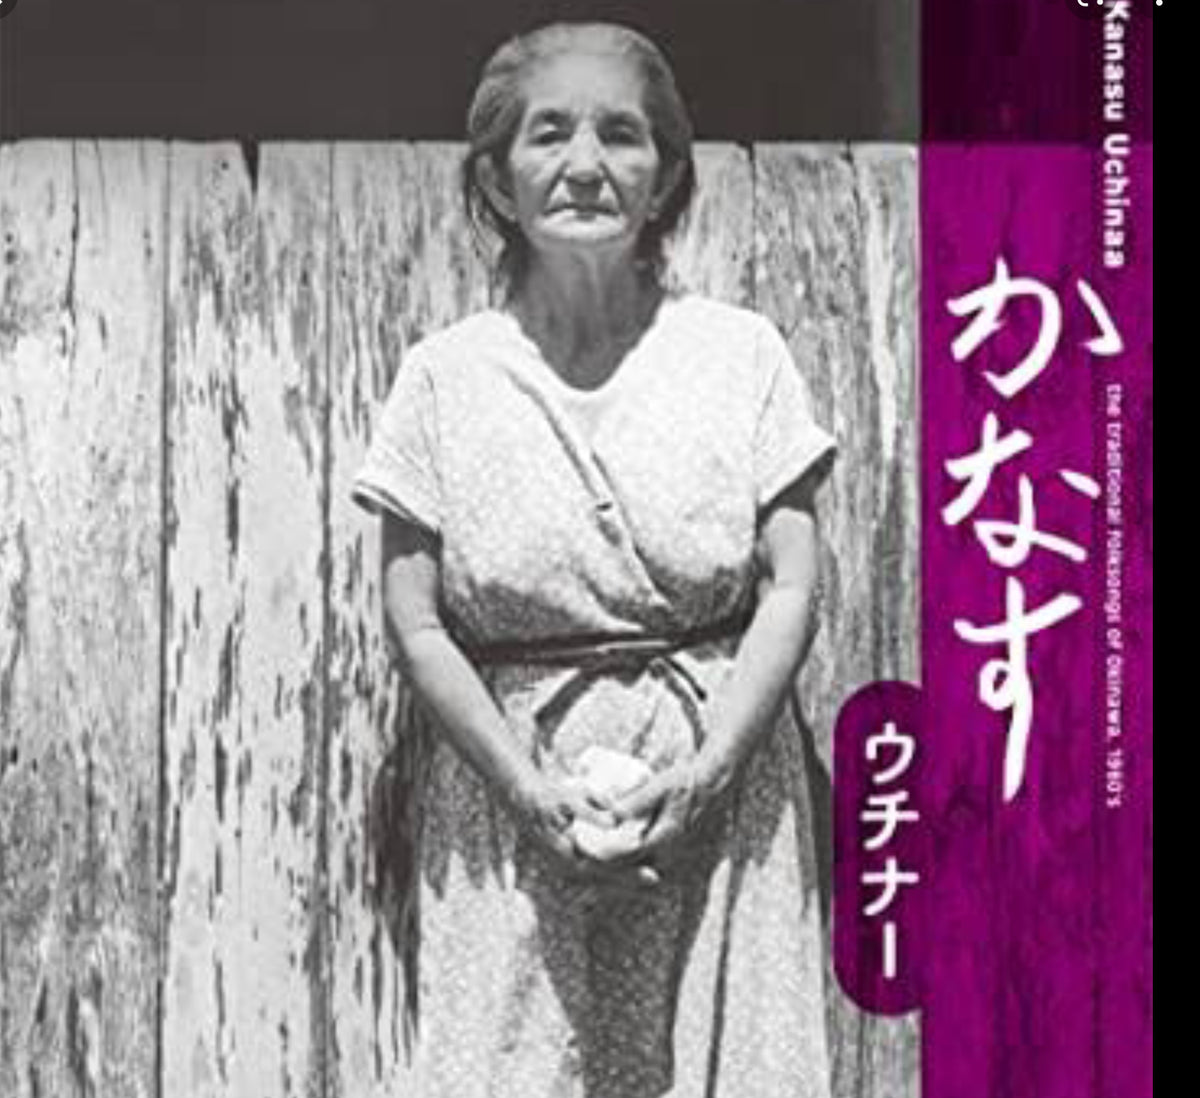 沖縄古謡CD「かなす　ウチナー 」/ 「Kanasu Uchinaa」 the traditional folksongs of Okinawa.